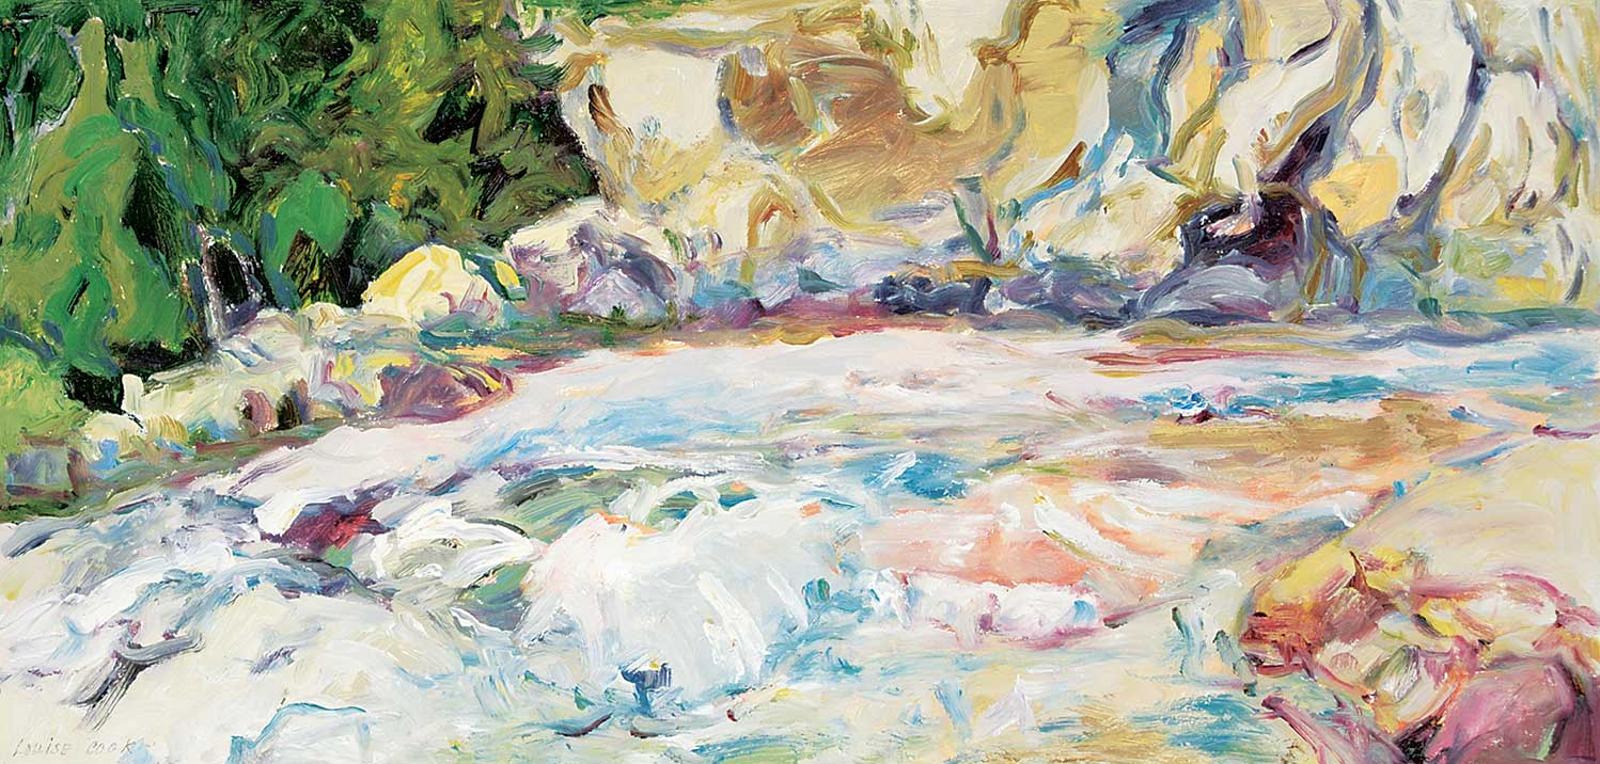 Louise Cook (1943) - Ram River Falls